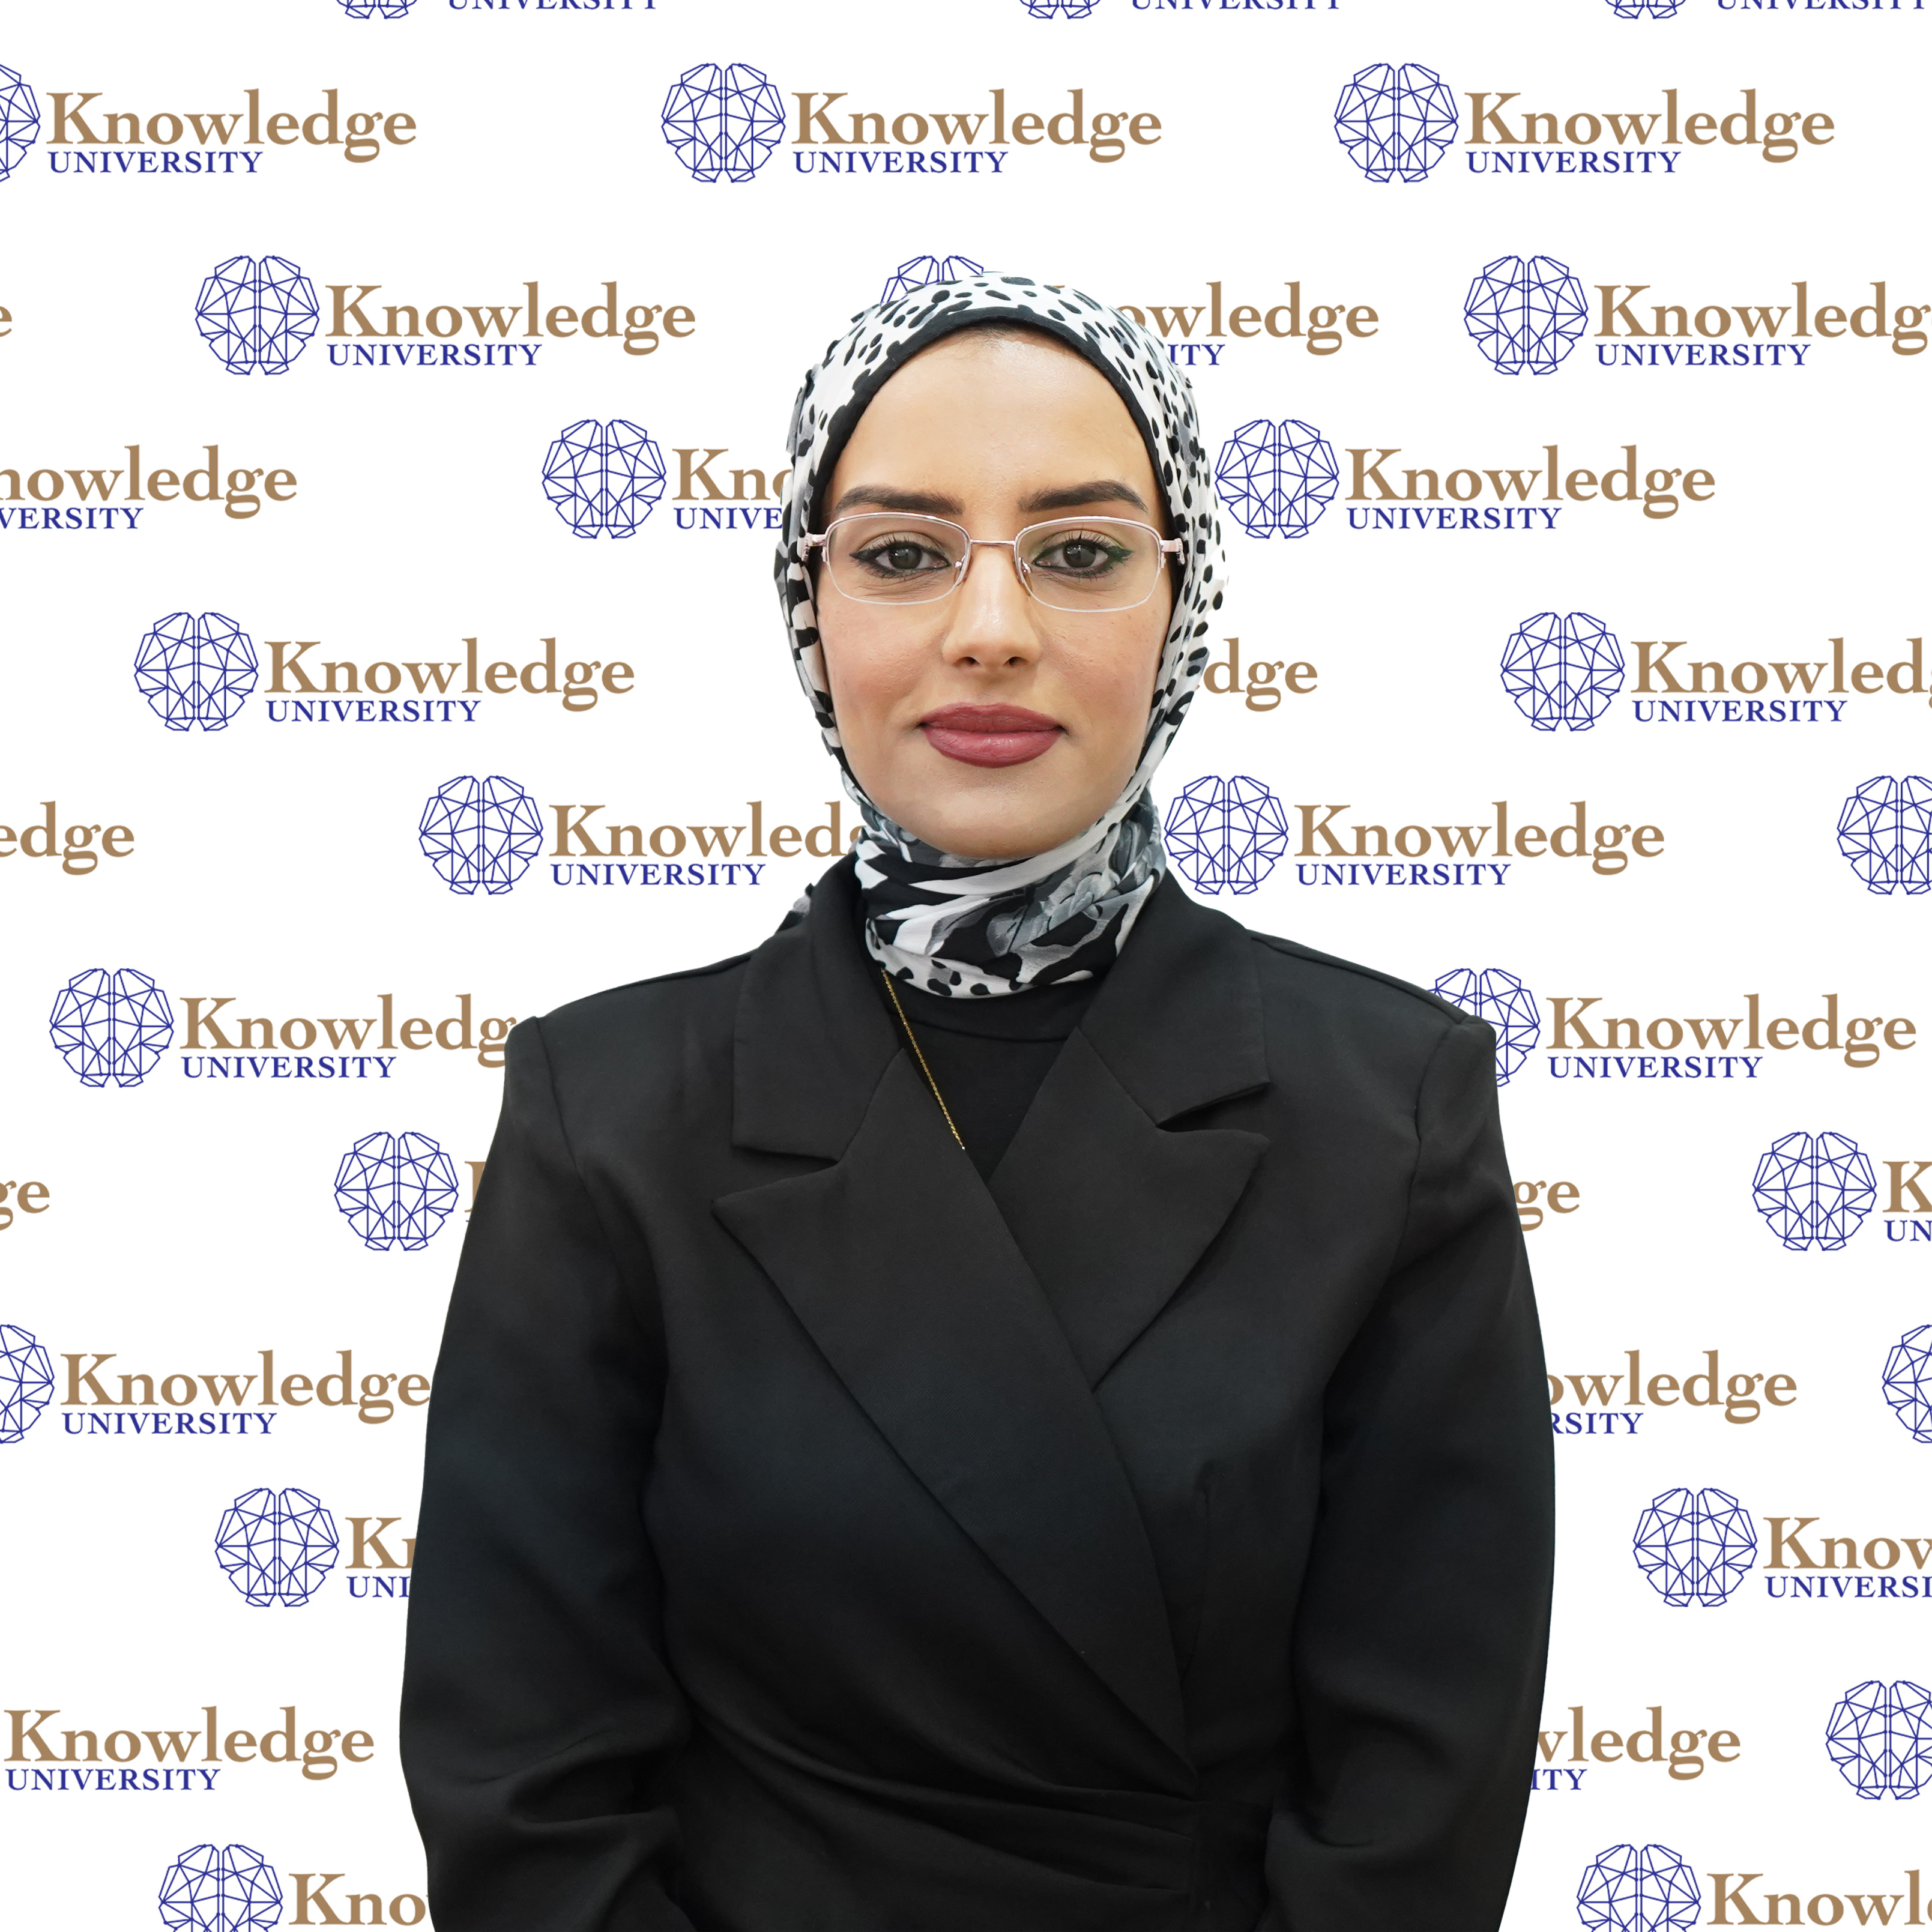 Zakia Abdalmnem Qoja, Staff at Knowledge